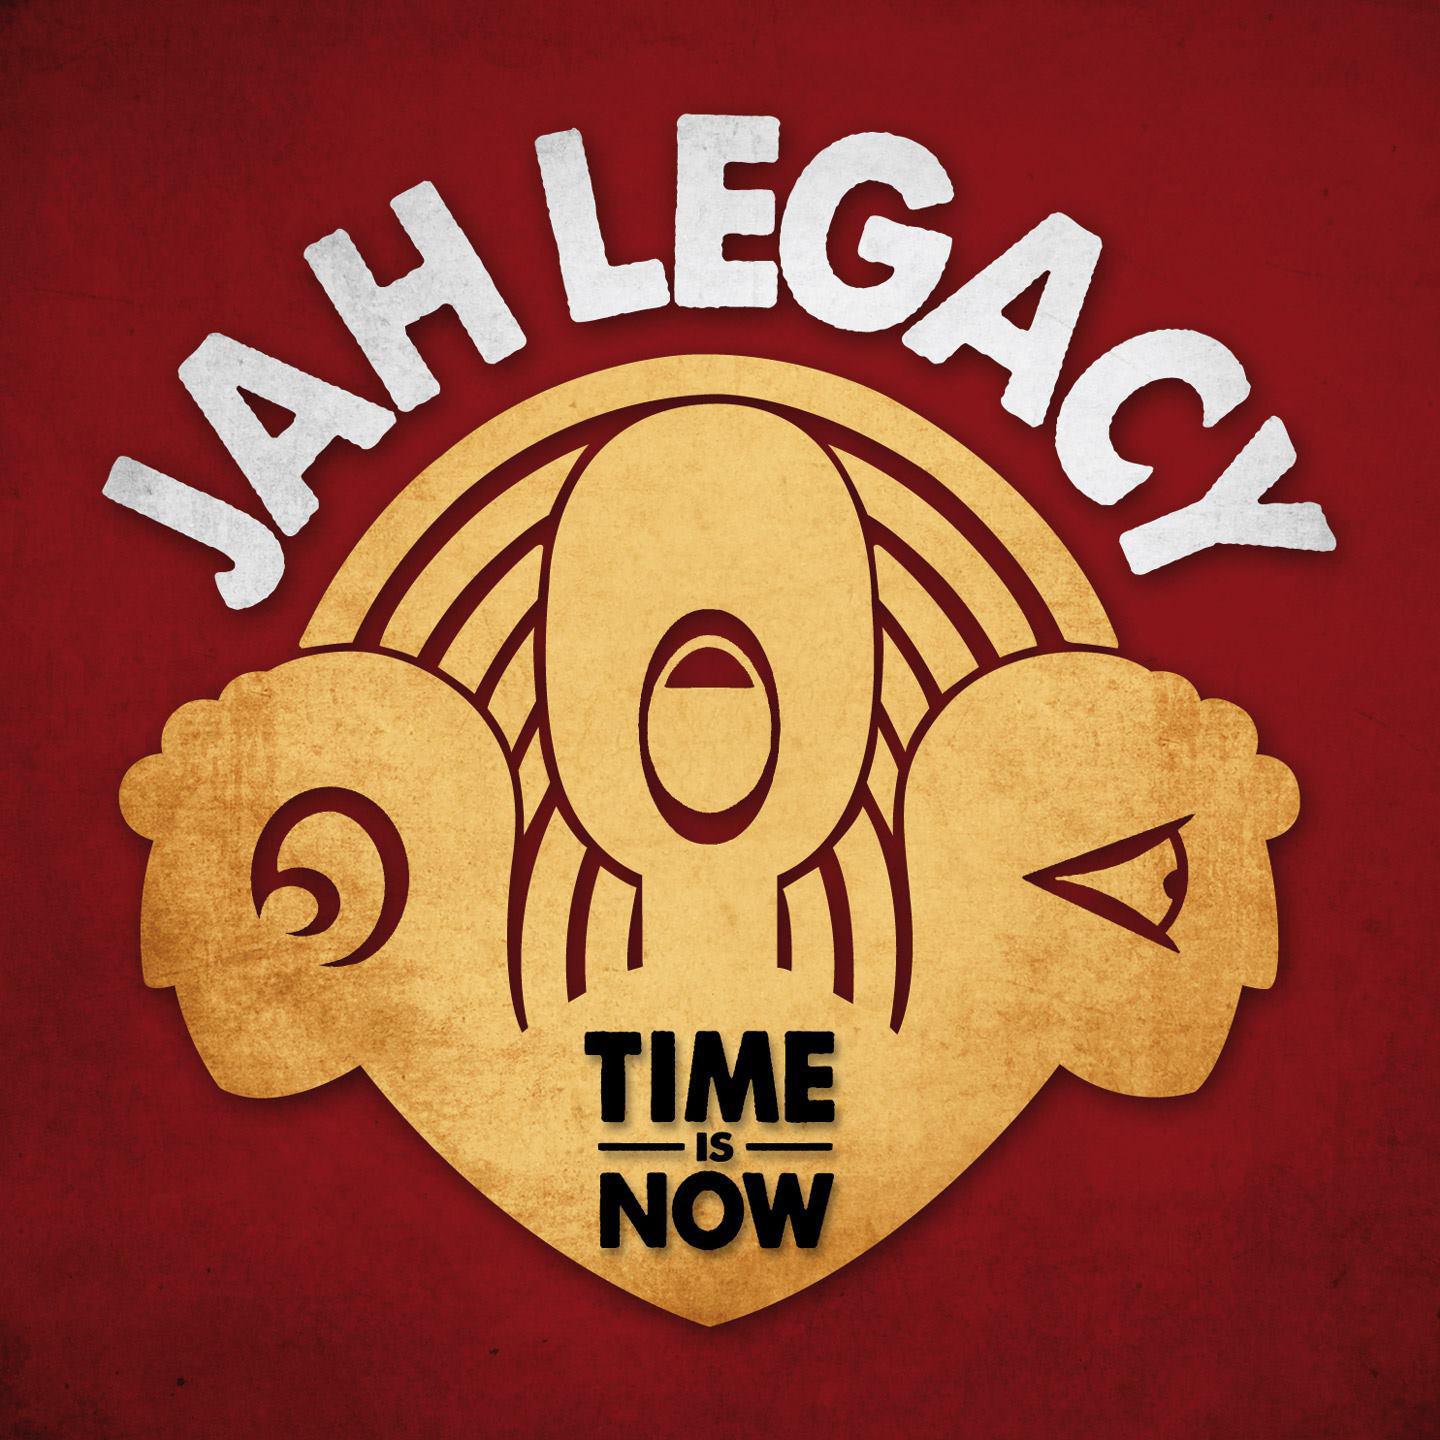 Cover de l'album de Jah Legacy - Time is now. Réalisé par Loseou